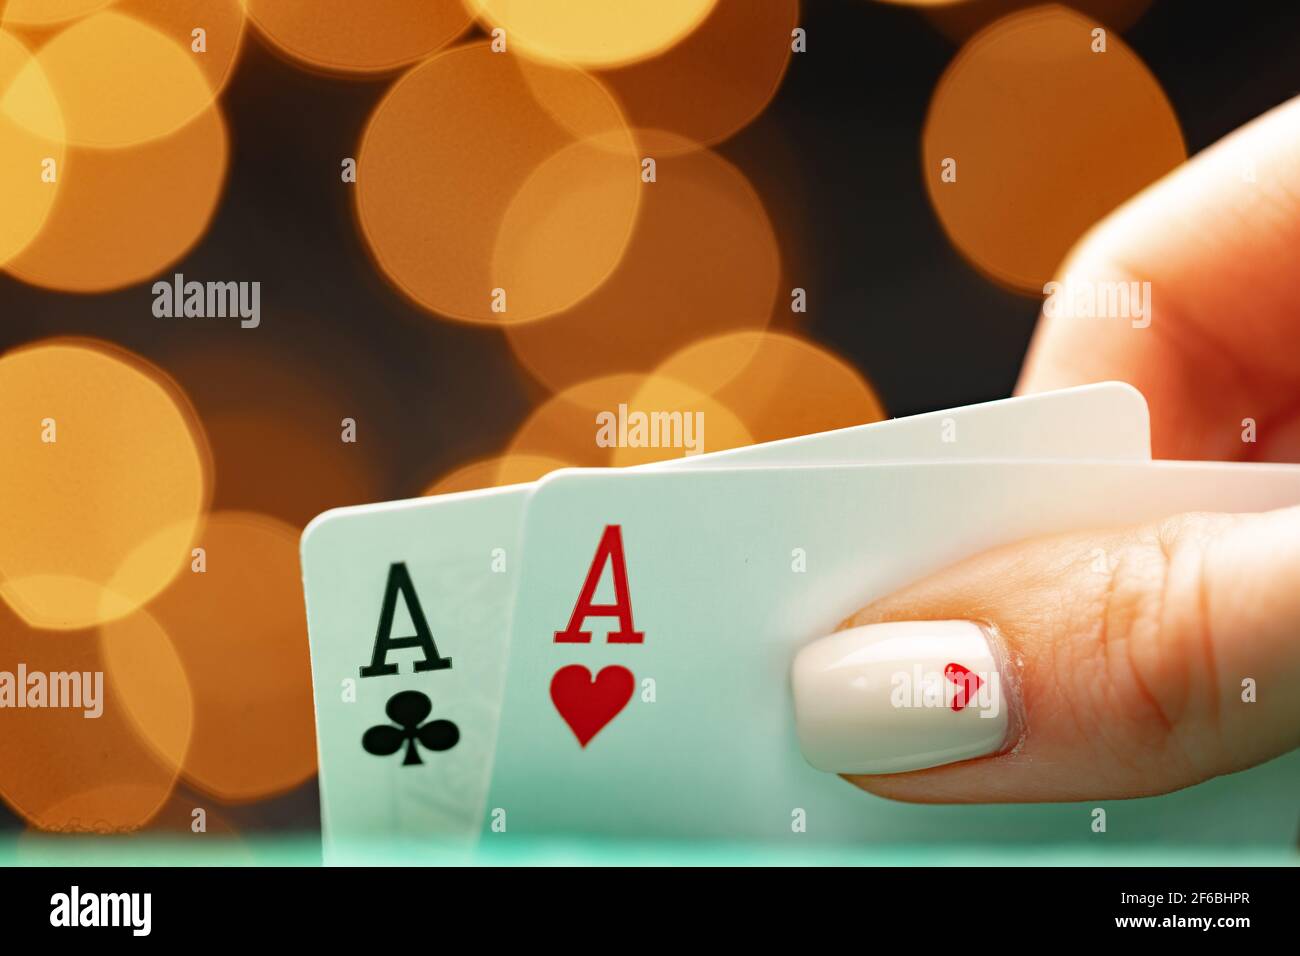 Weibliche Hand hält Spielkarten gegen Bokeh Hintergrund Stockfoto